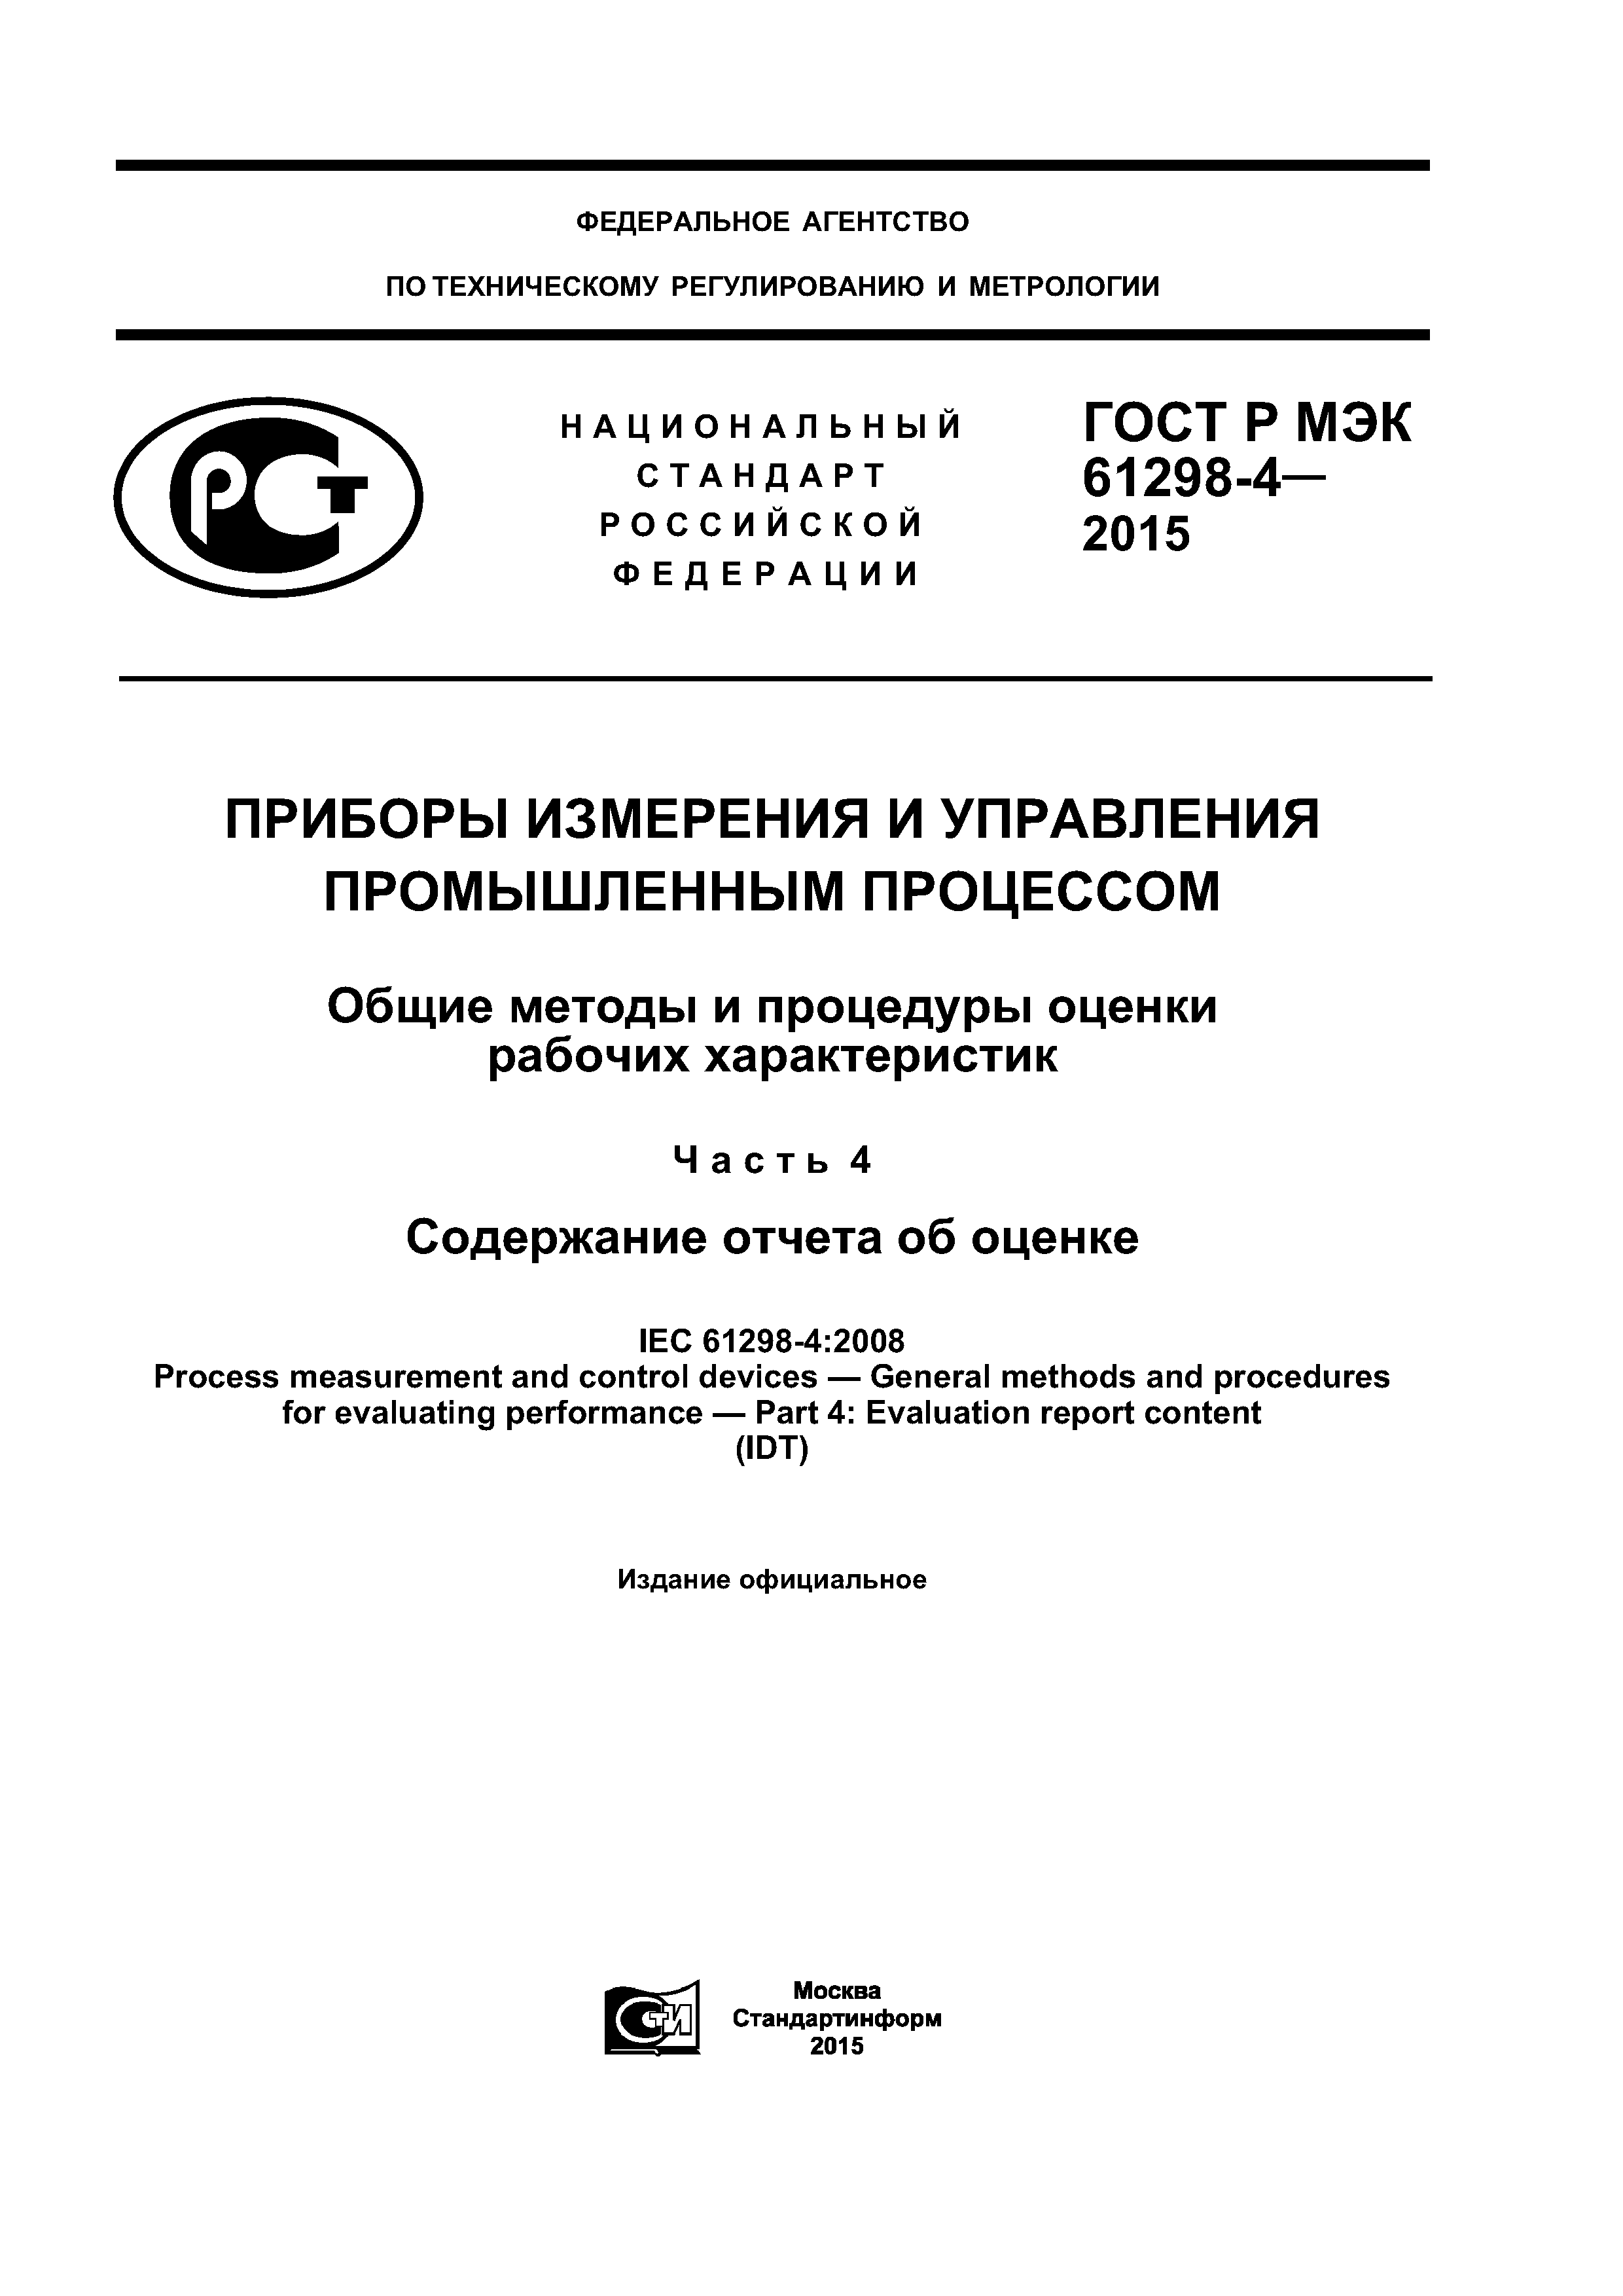 ГОСТ Р МЭК 61298-4-2015